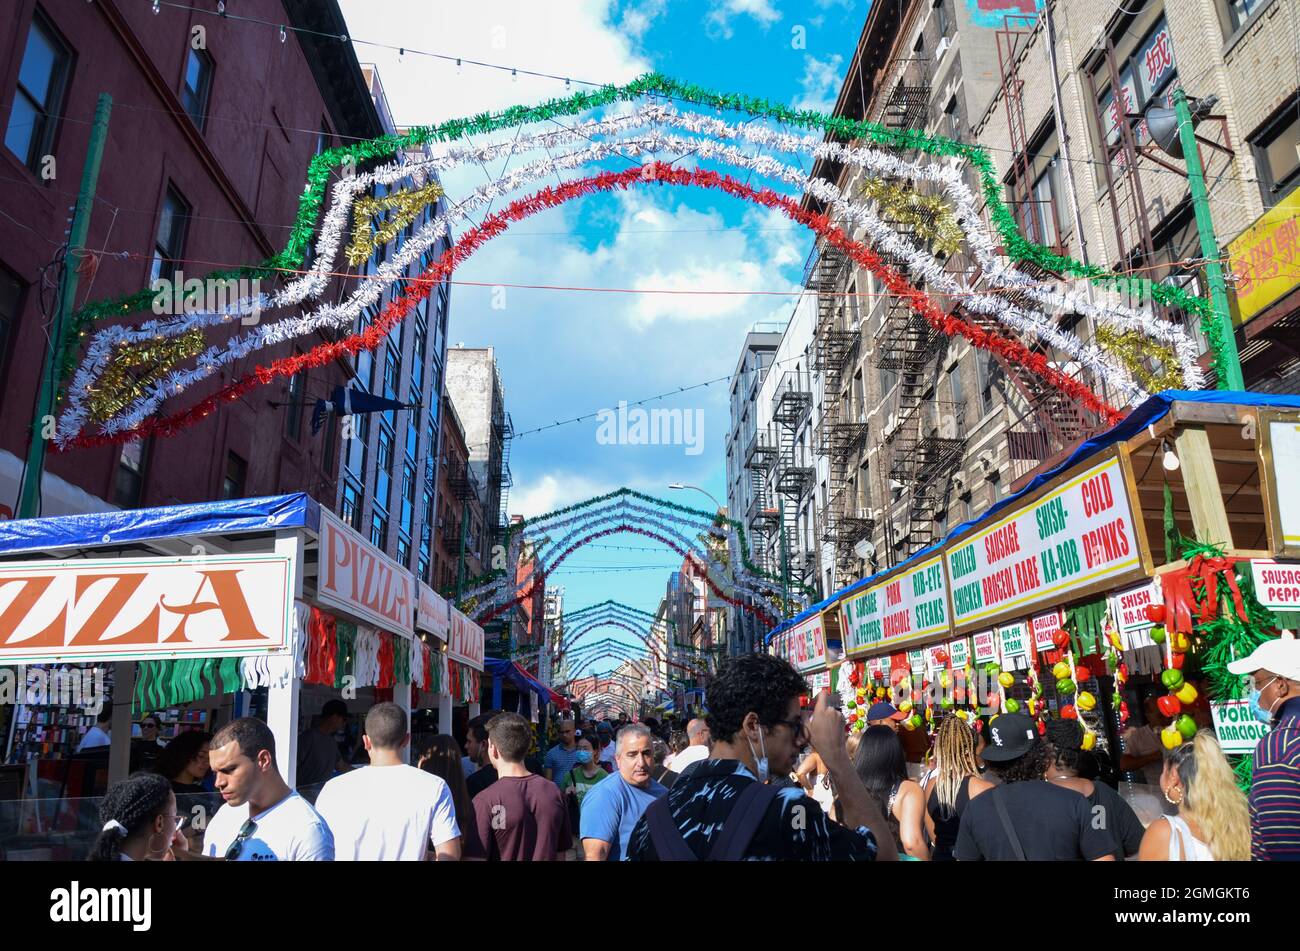 Der jährliche San Gennaro kehrte am 18. September 2021 nach Little Italy in New York zurück, um die italienische Kultur und das italienische Erbe in der Stadt zu feiern. Stockfoto